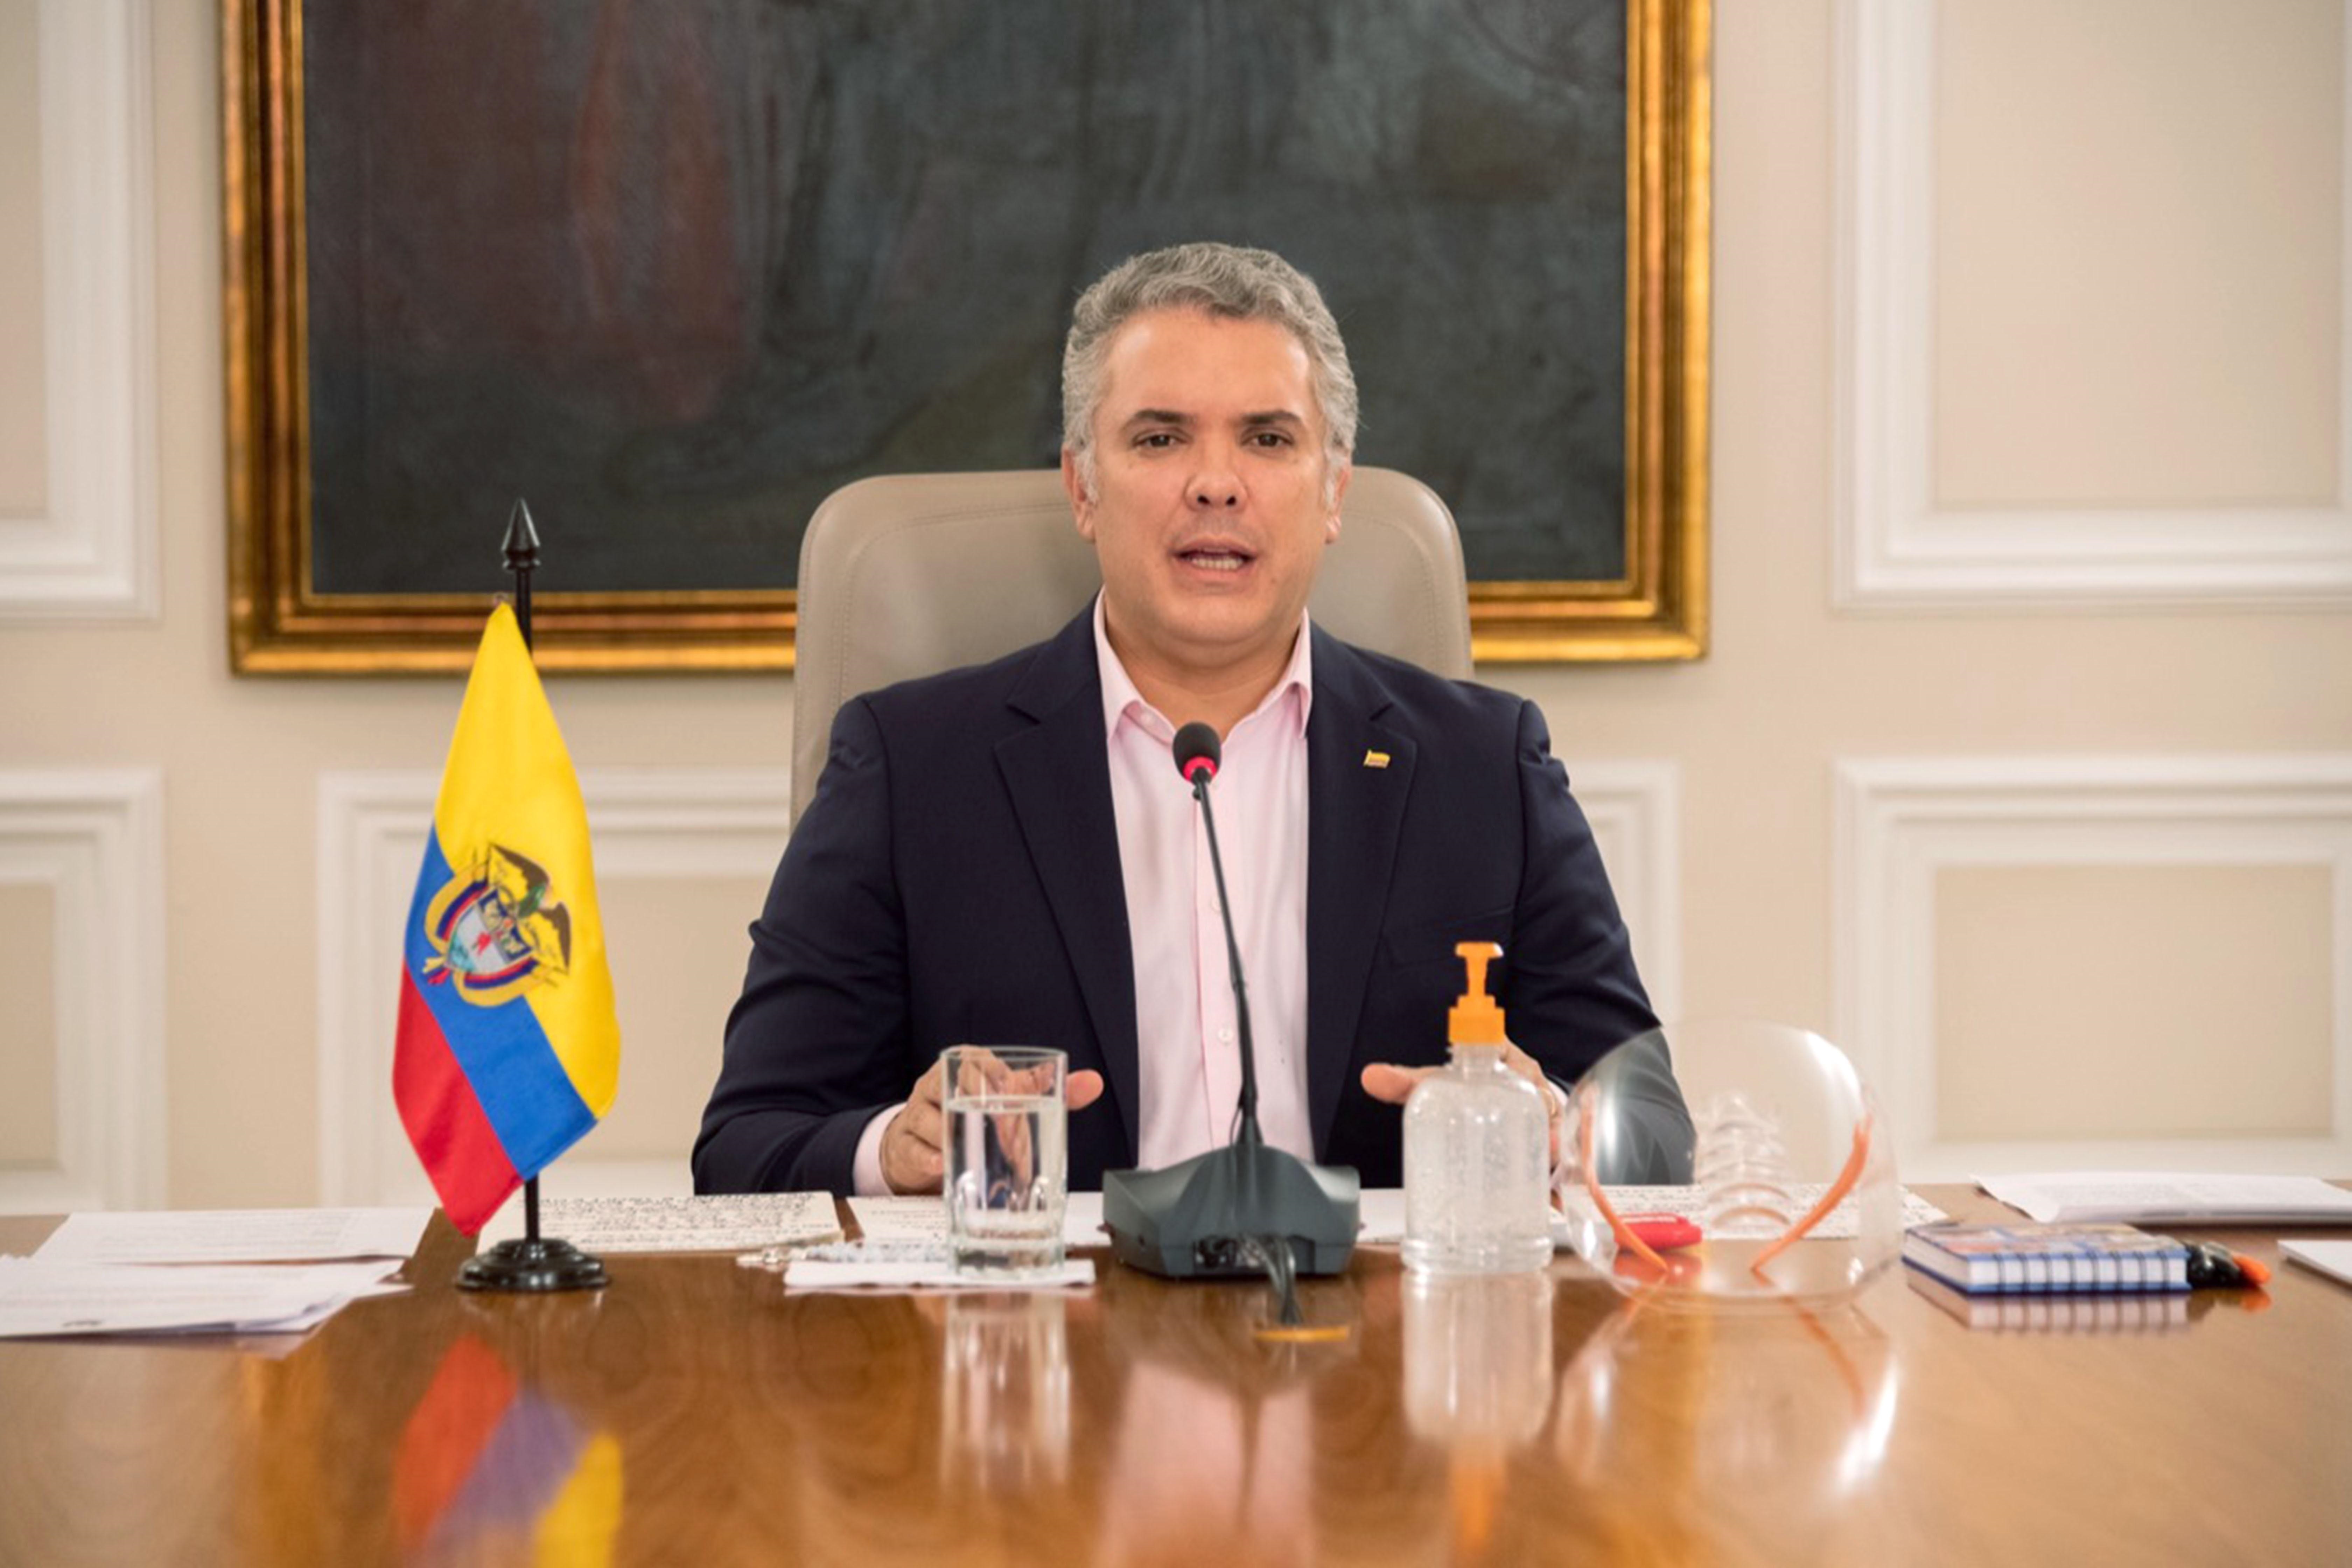 Duque reitera que migrantes venezolanos en Colombia deben regularizarse para vacunarse